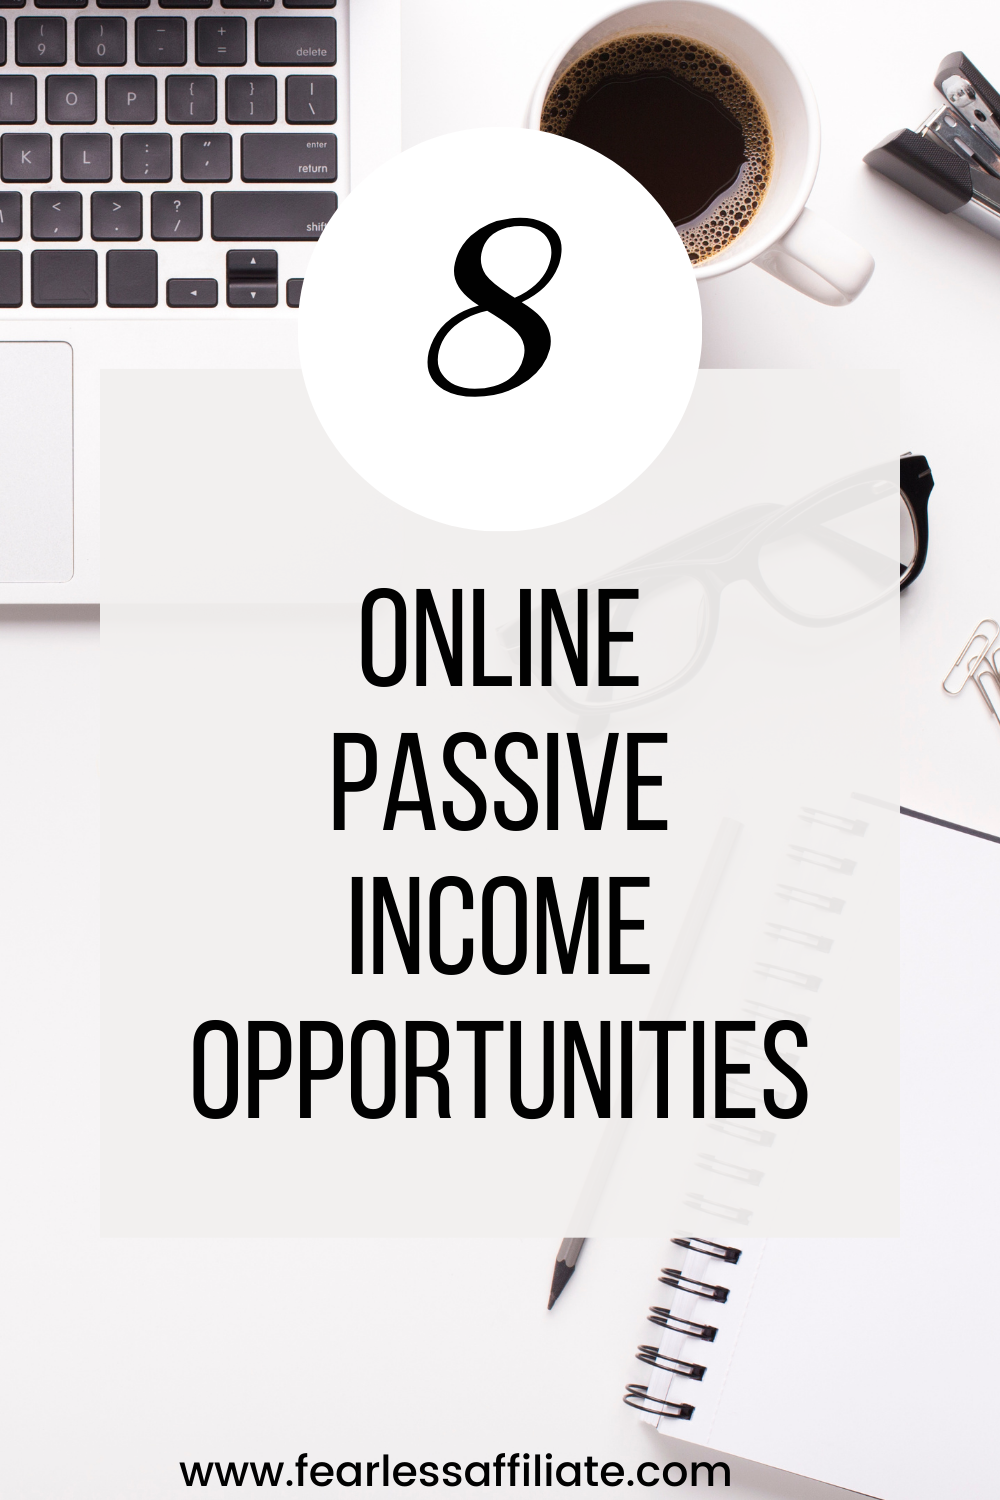 More Online Passive Income Ideas